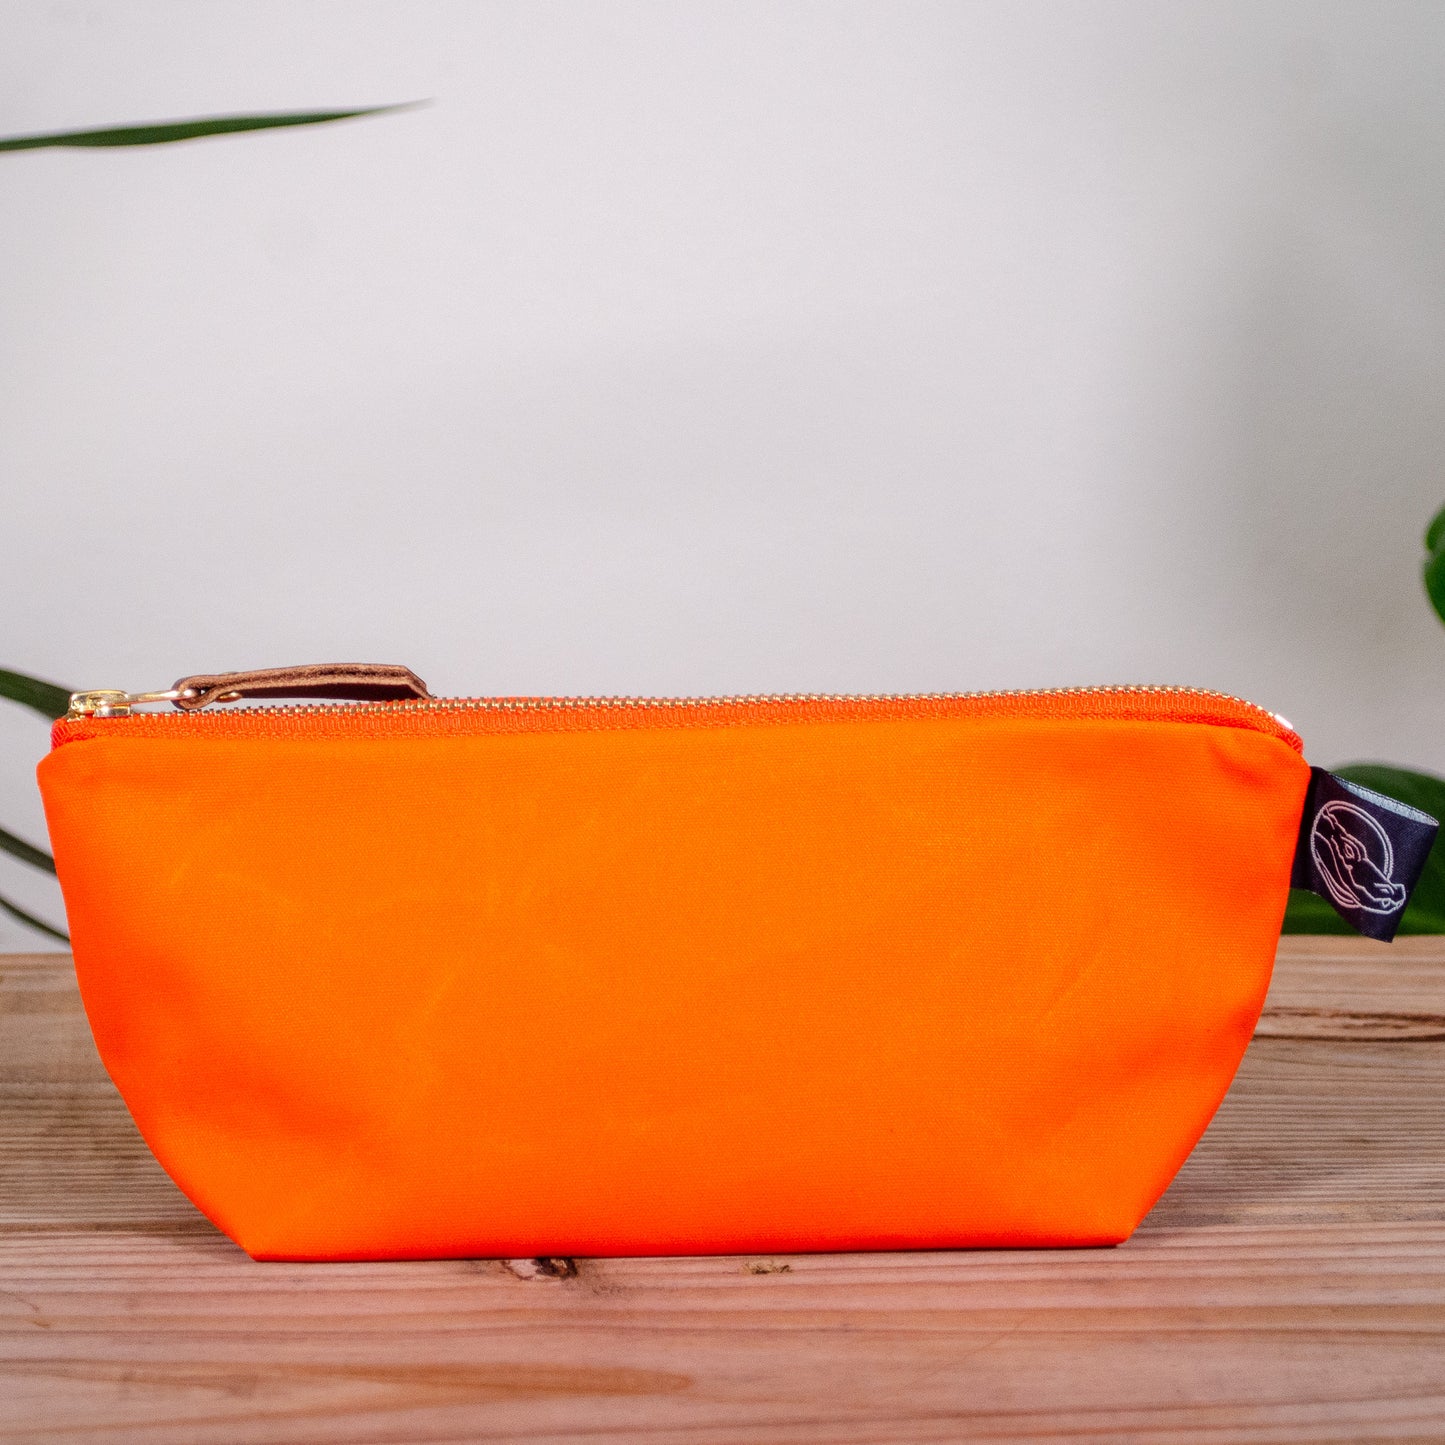 Orange Bag No. 1 - The Essentials Bag